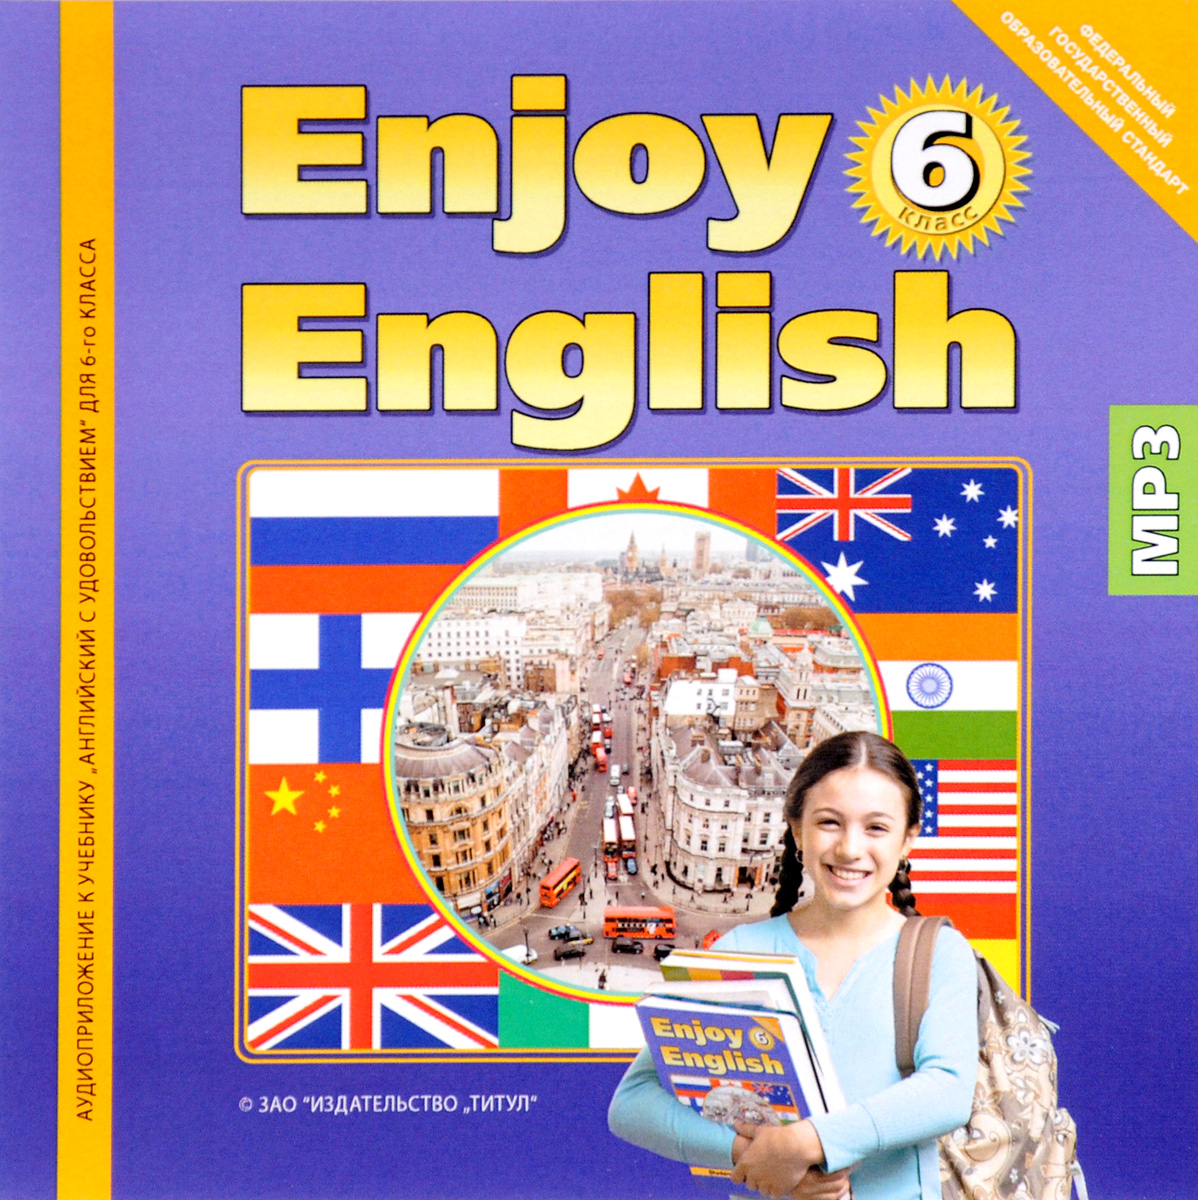 Энджой инглиш 5 класс учебник. Enjoy English 6 класс. Учебник по английскому языку. Английский язык. Учебник. Enjoy English учебник.